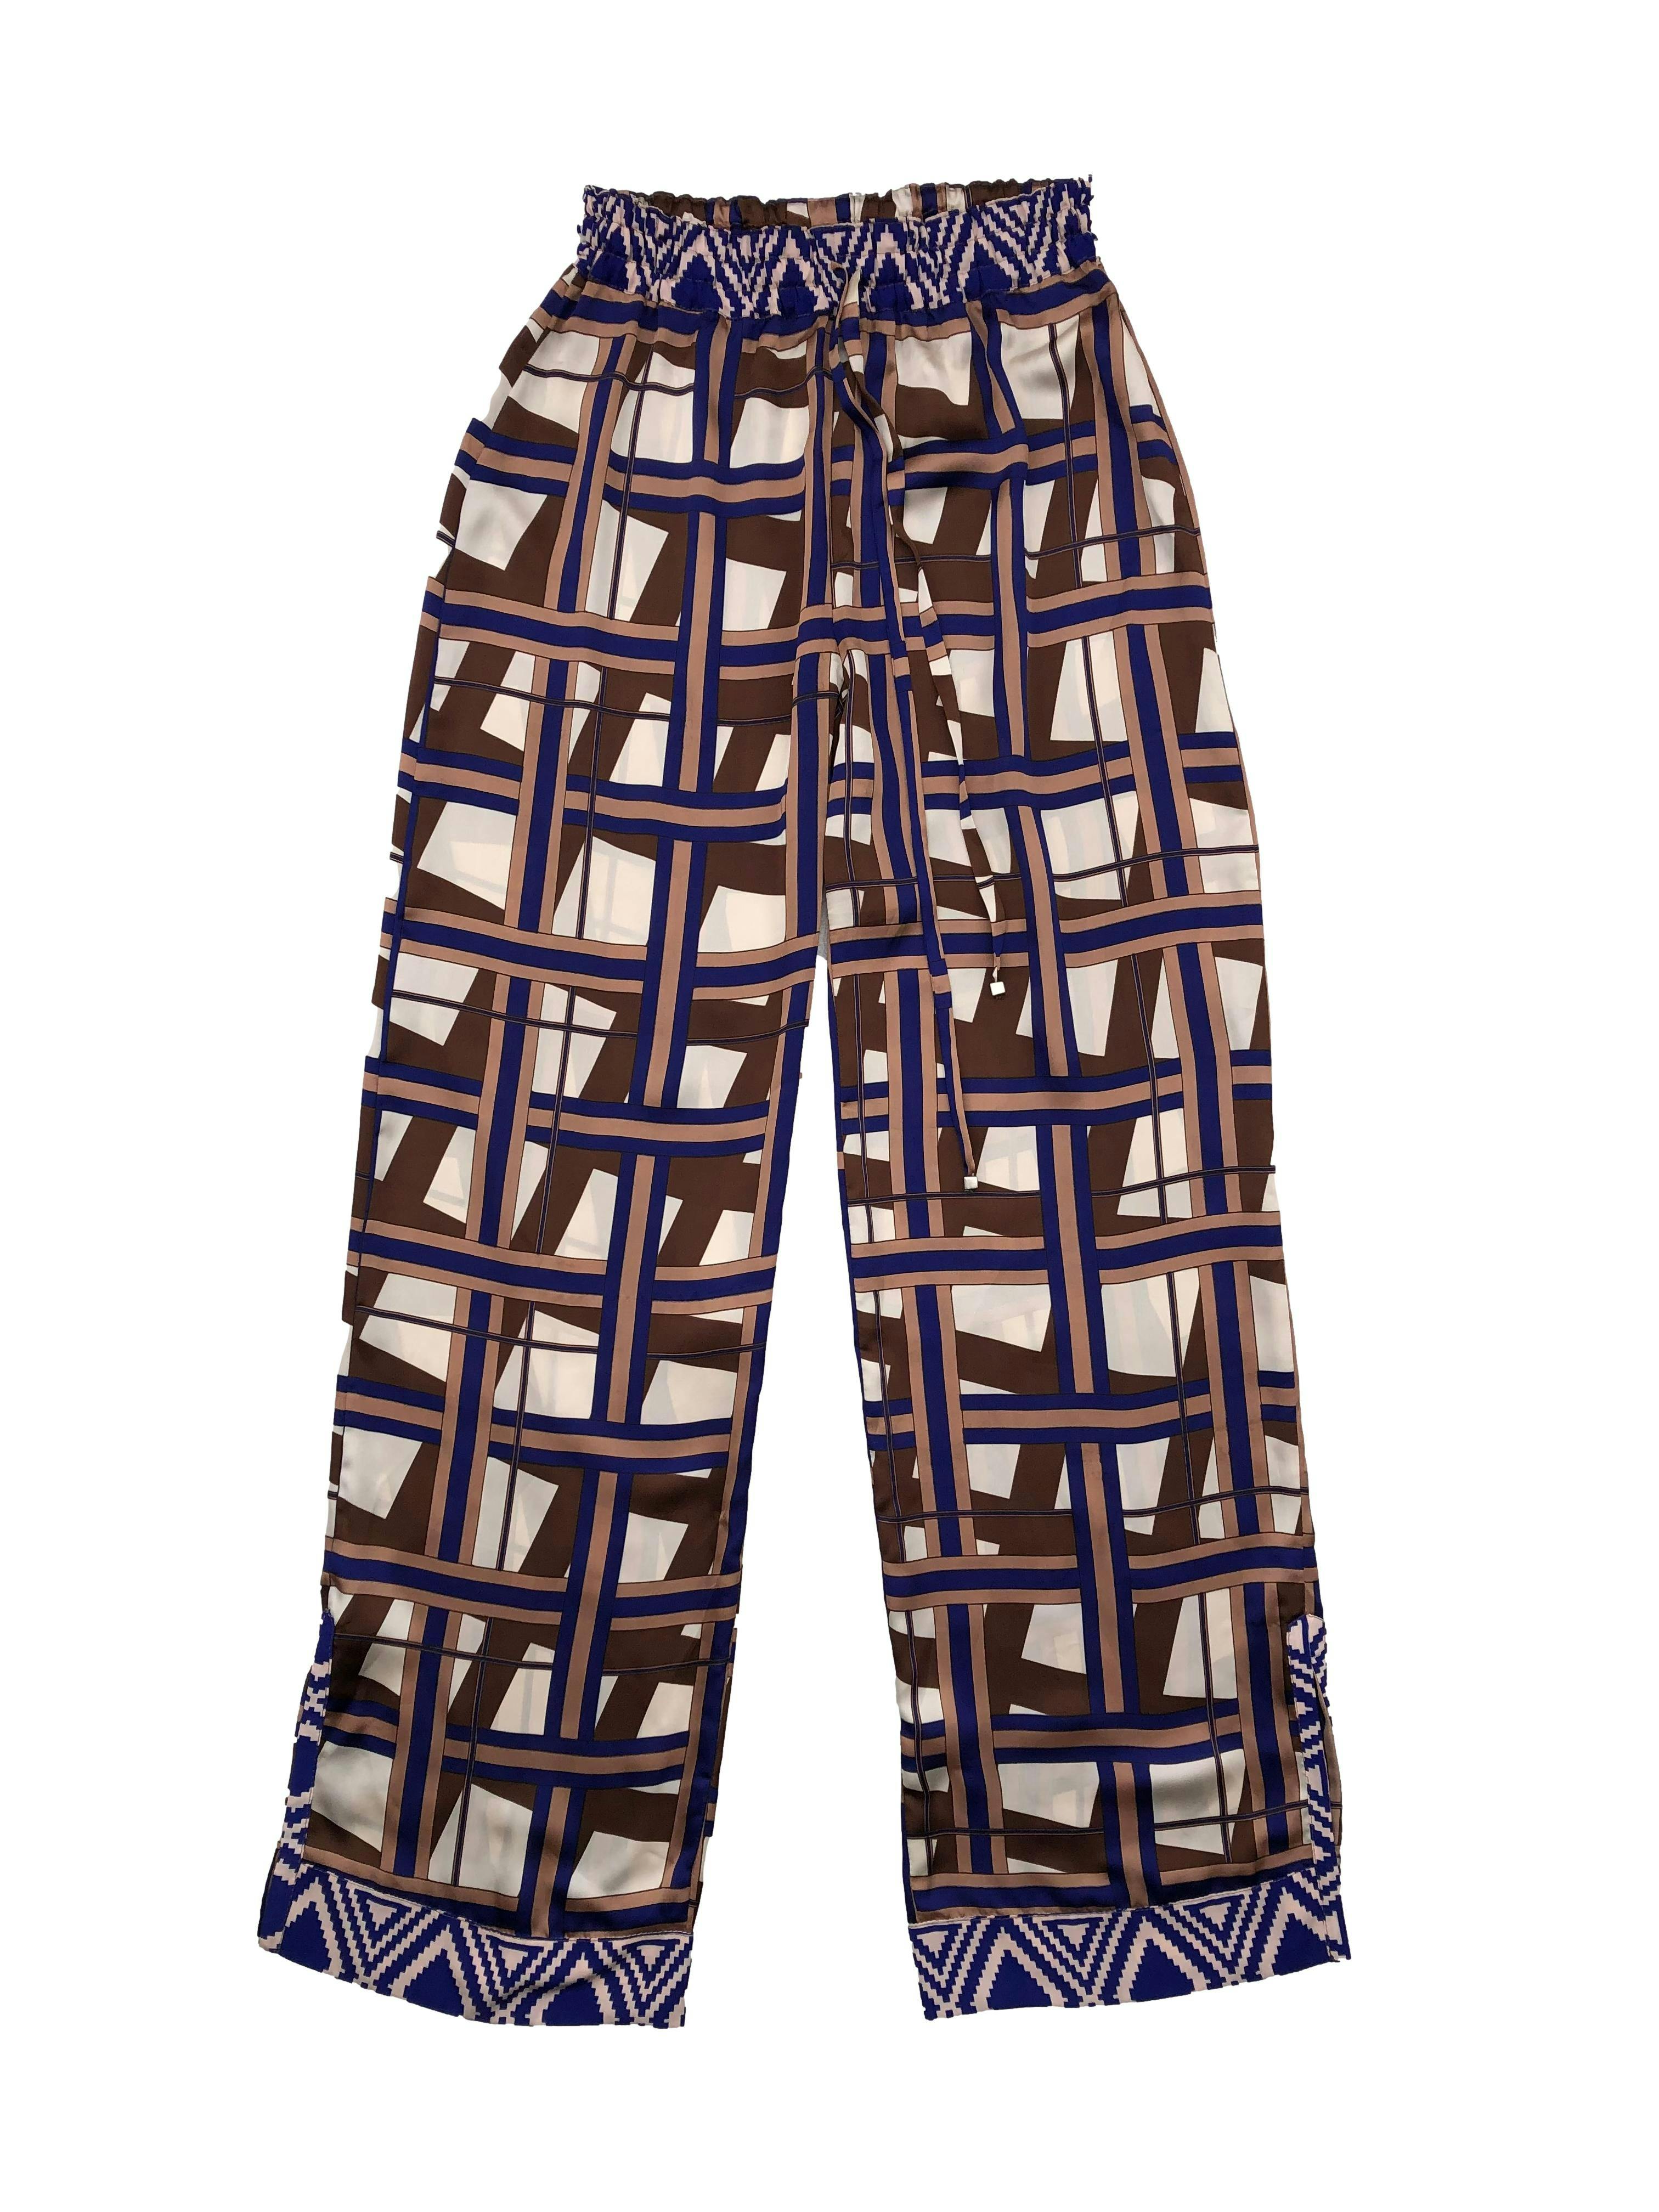 Pantalón palazzo con print geométrico en tonos azules y marrones, tela sedosa, pretina elástica, cordón y aberturas laterales. Cintura 66cm sin estirar, Largo 112cm.